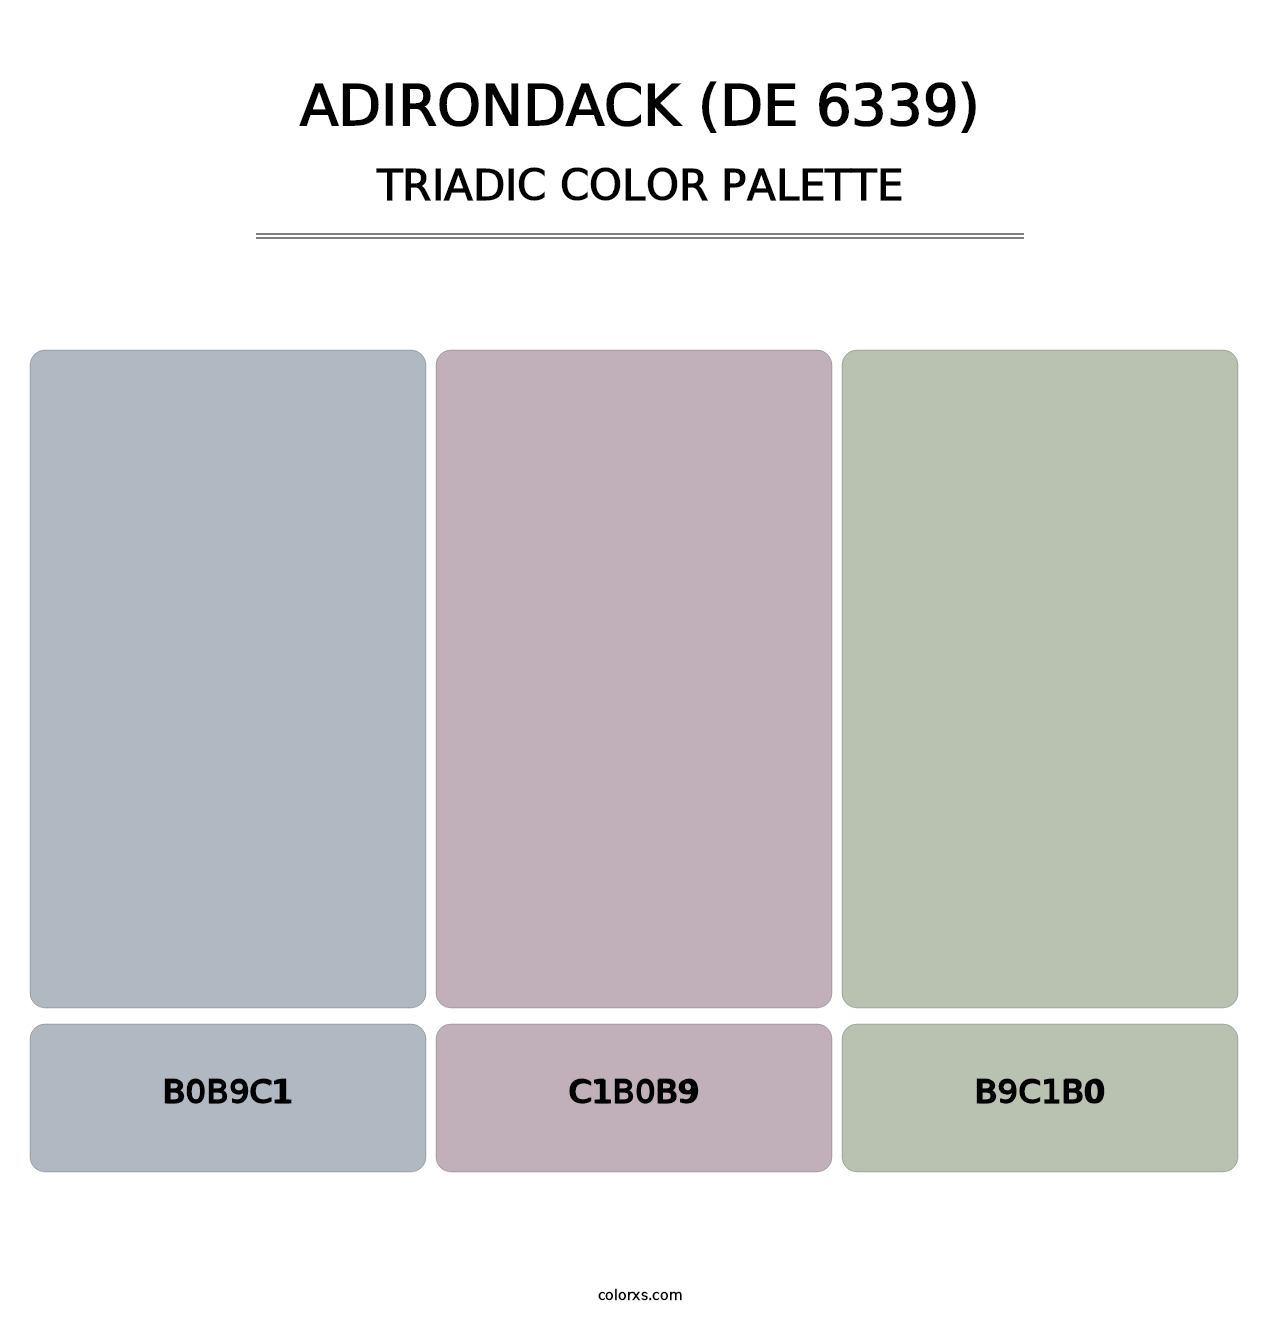 Adirondack (DE 6339) - Triadic Color Palette